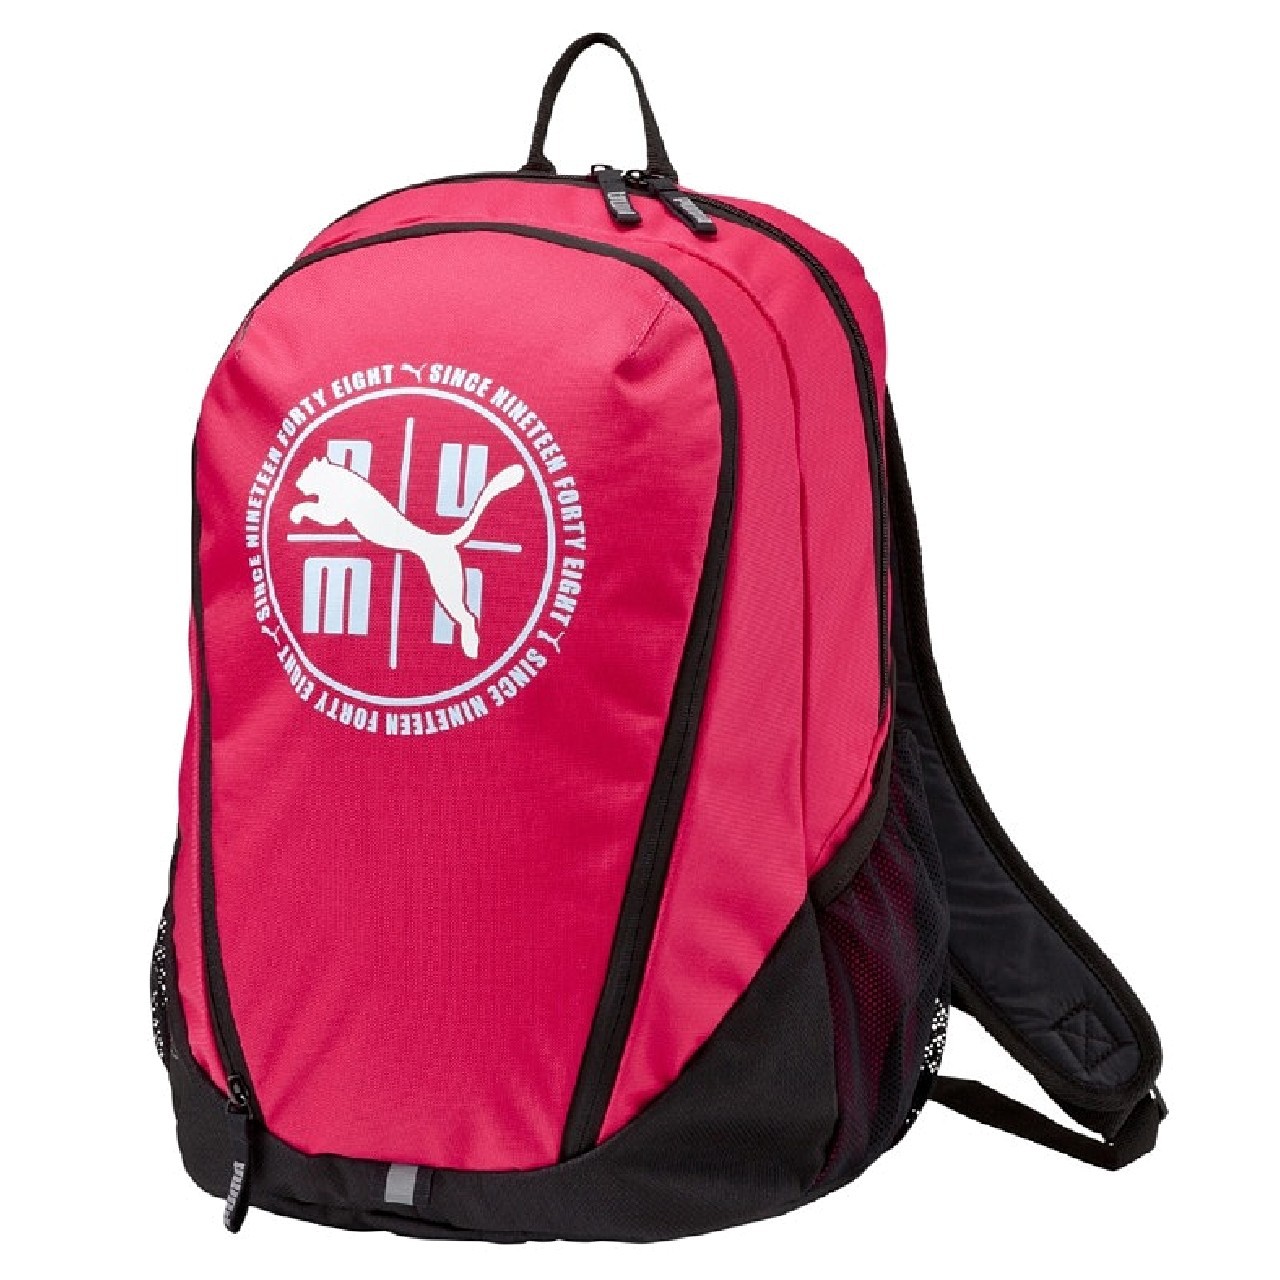 Puma Echo Backpack Sportrucksack Backpack Tasche Bag